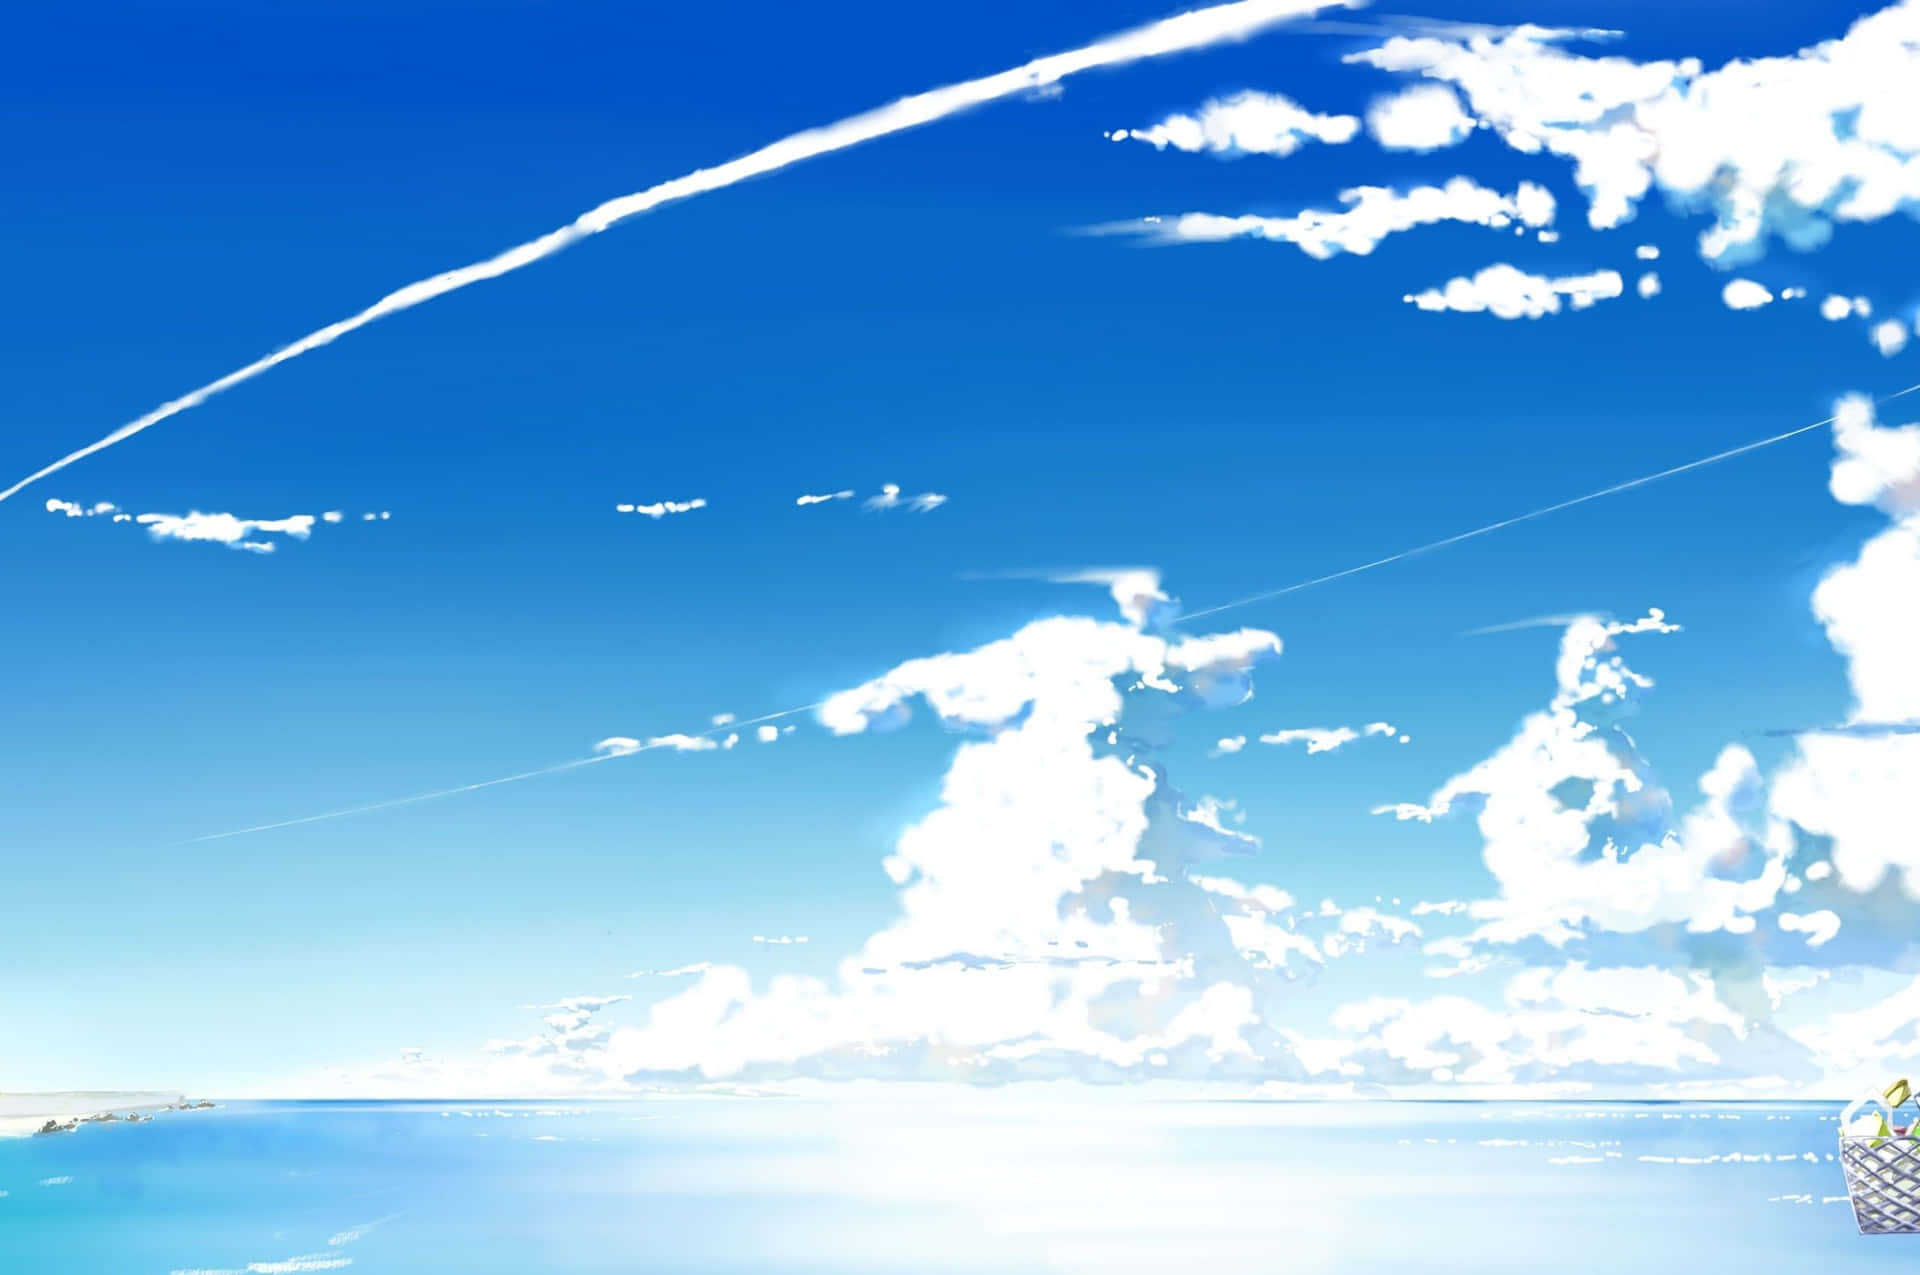 Oplev en surreal oplevelse ved Anime Beach Wallpaper